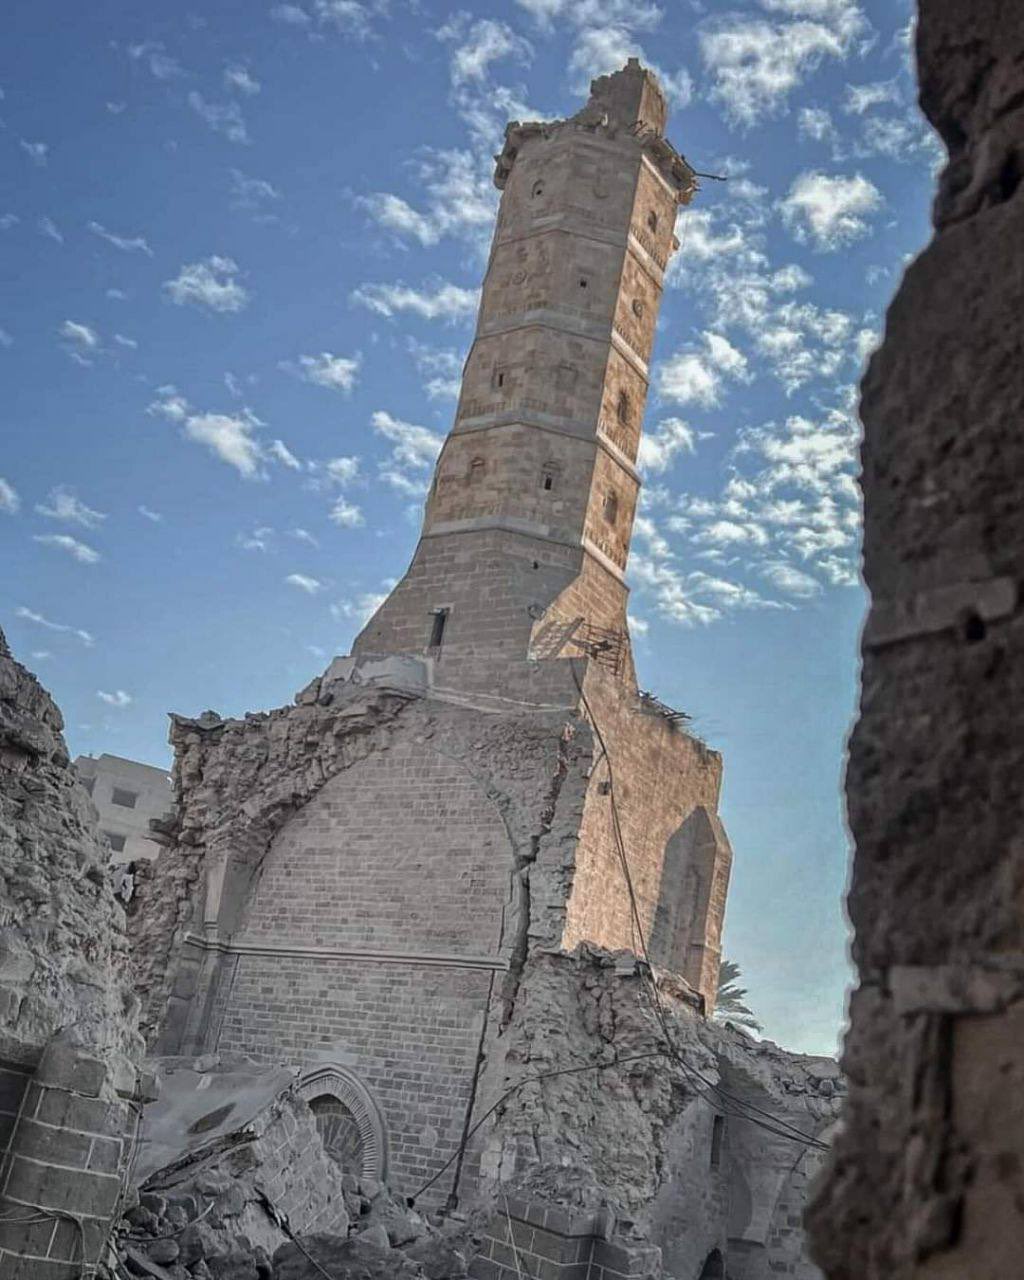 تقرير أوّليّ عن المساجد التي دمرها الاحتلال أثناء حرب الطوفان وقائمة أوّليّة بأسمائها